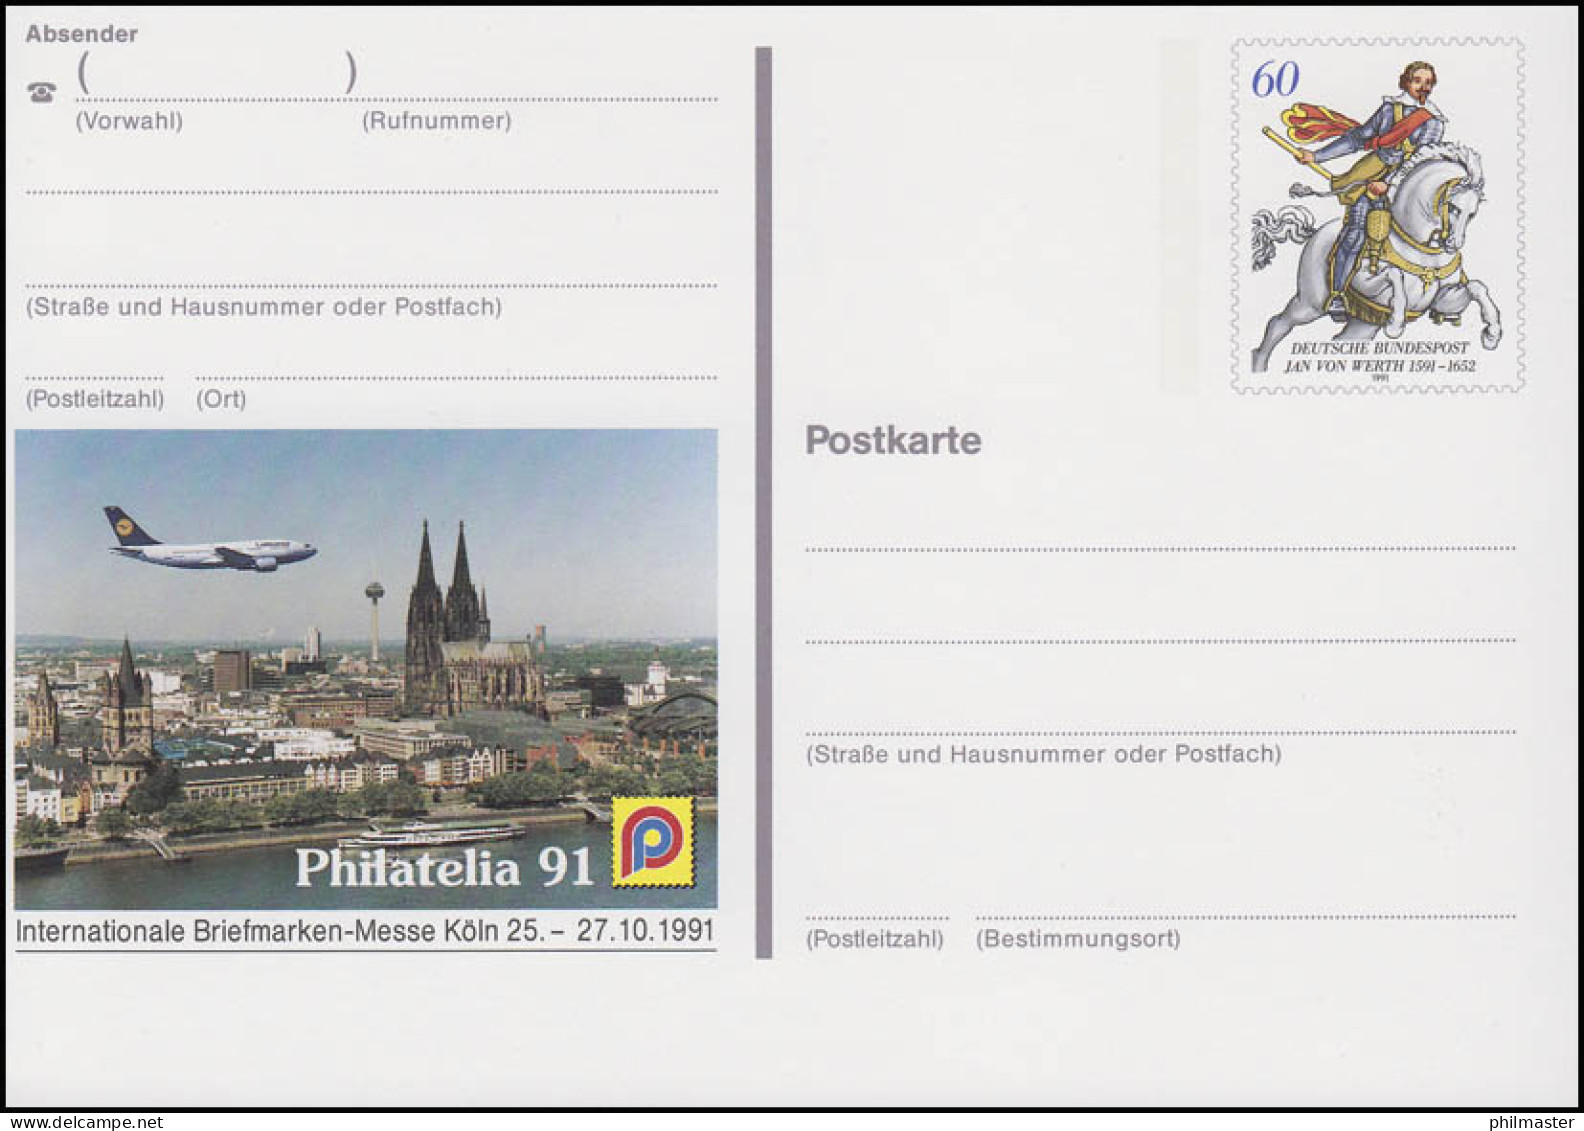 PSo 25 Briefmarken-Messe PHILATELIA Köln 1991, ** - Postcards - Mint